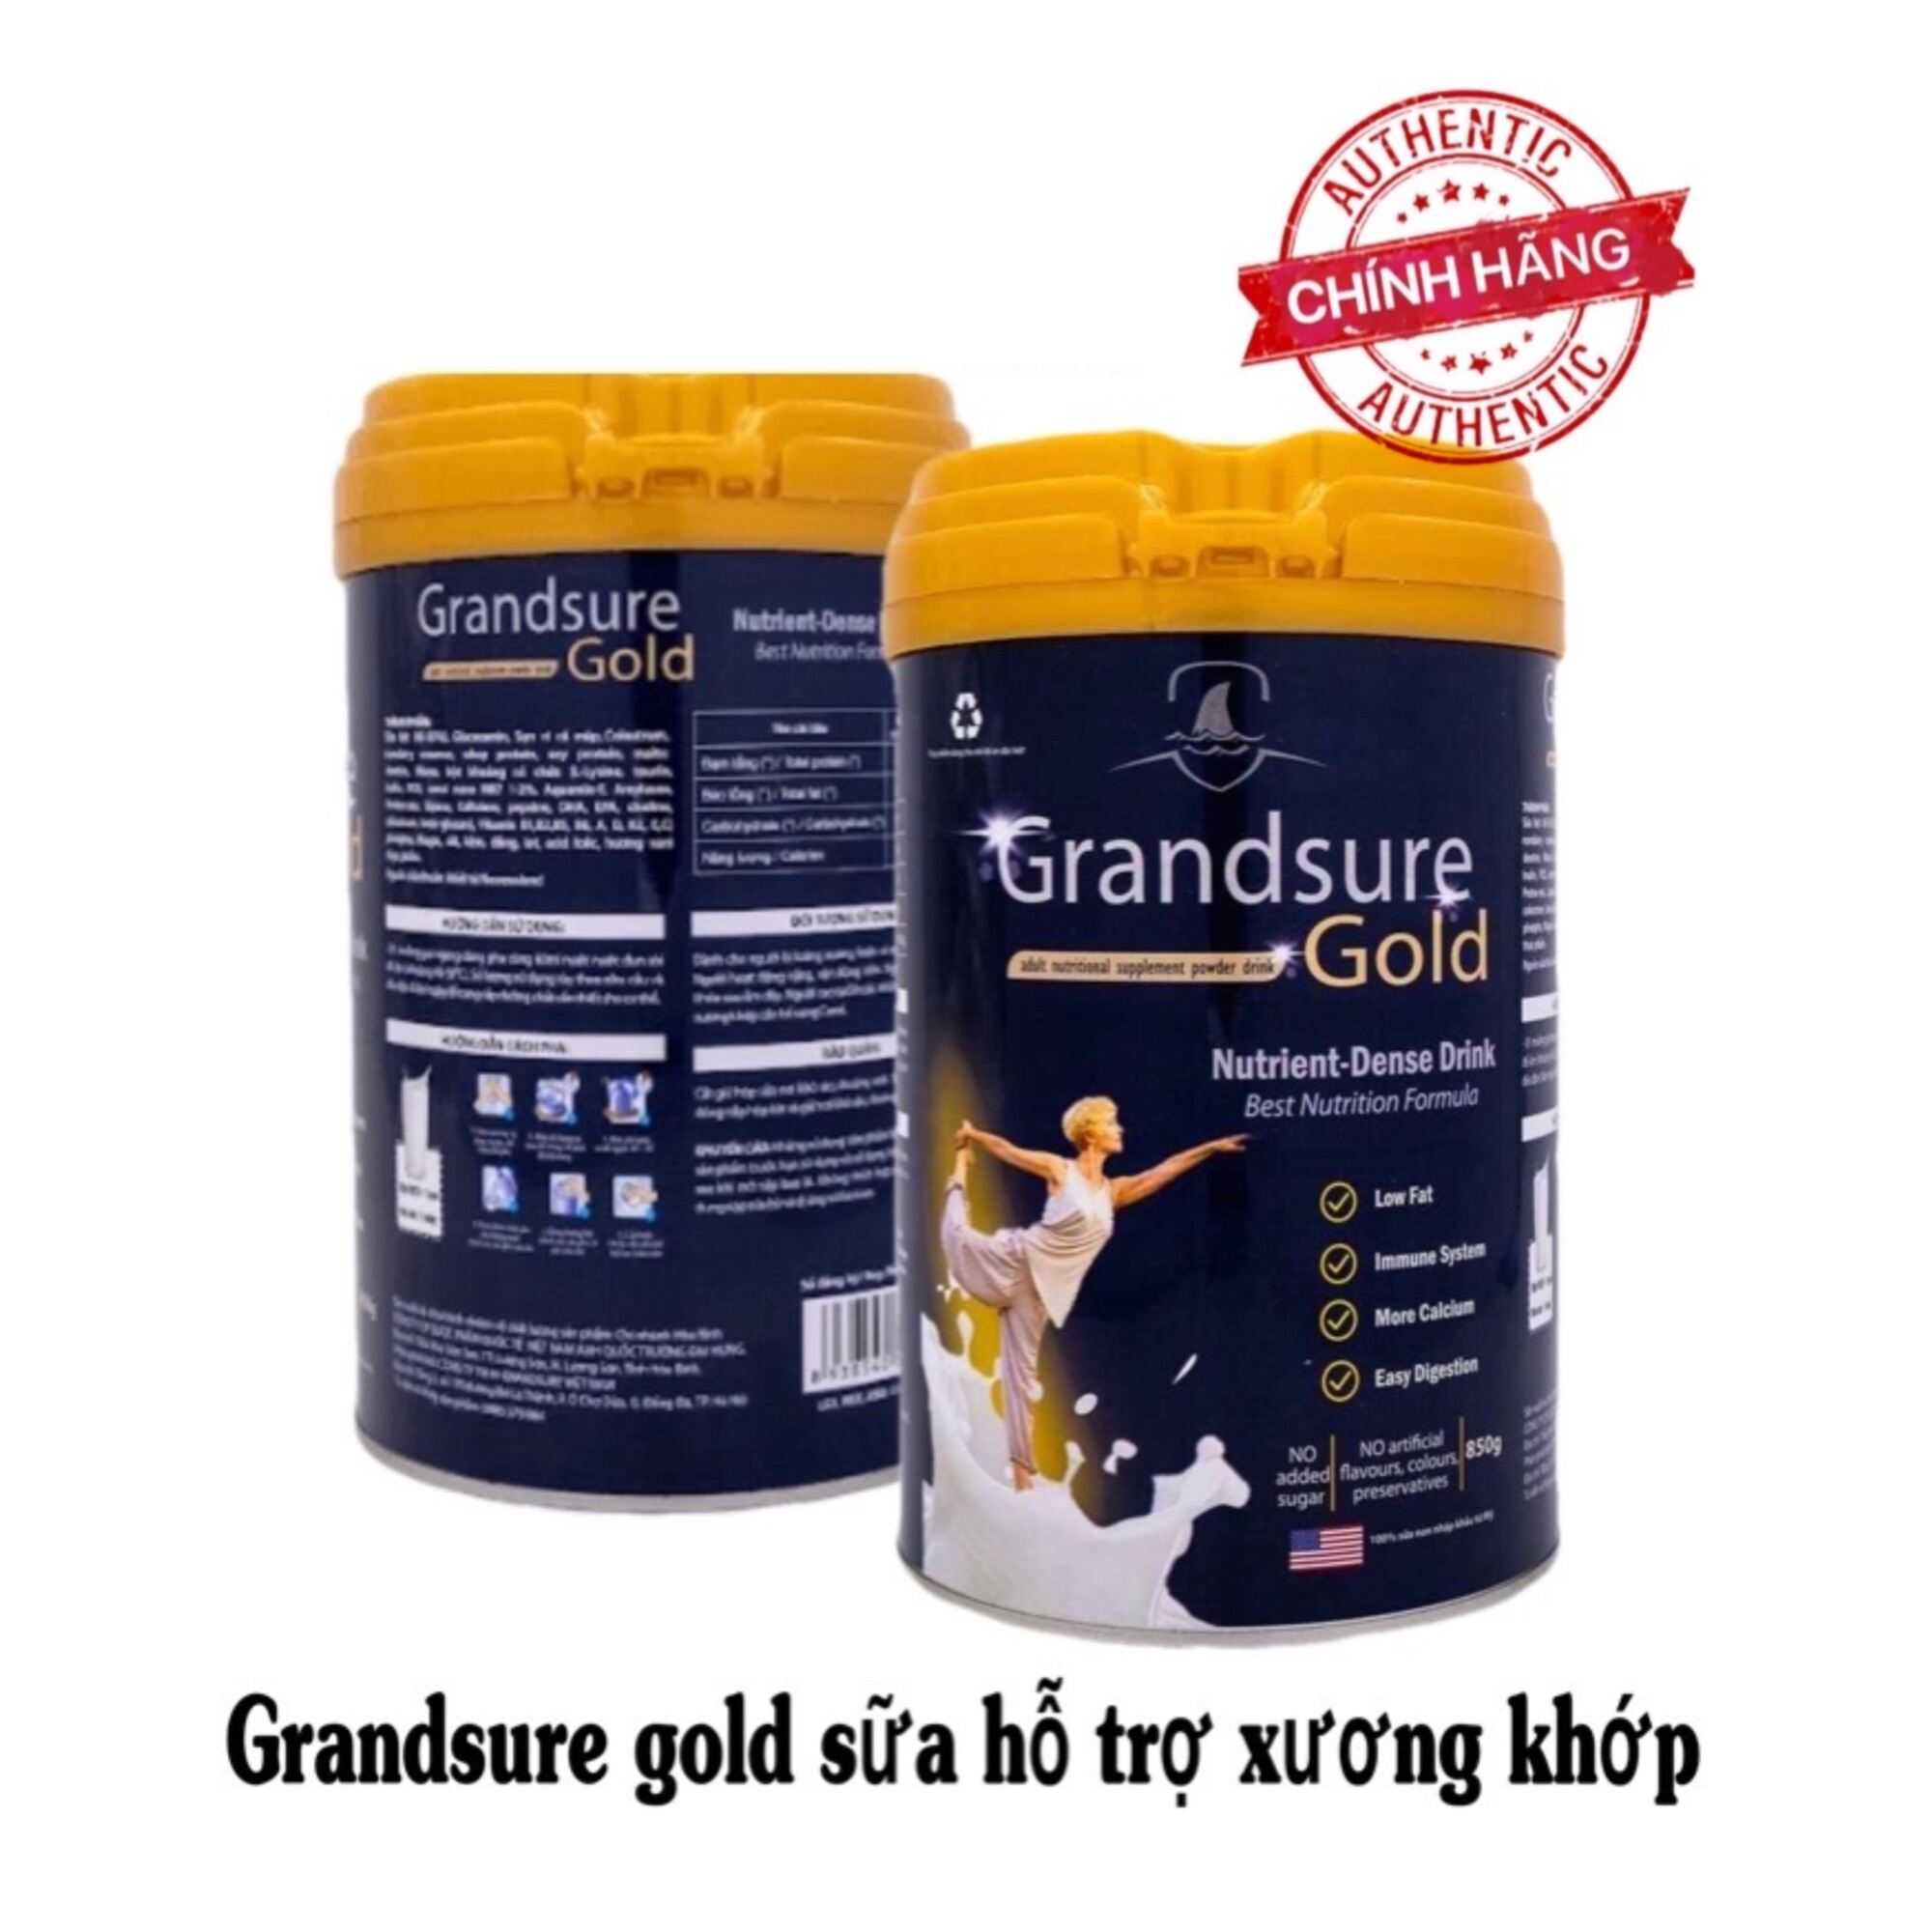 Sữa non xương khớp Grandsure Gold lon 850g chính hãng giá tốt date mới